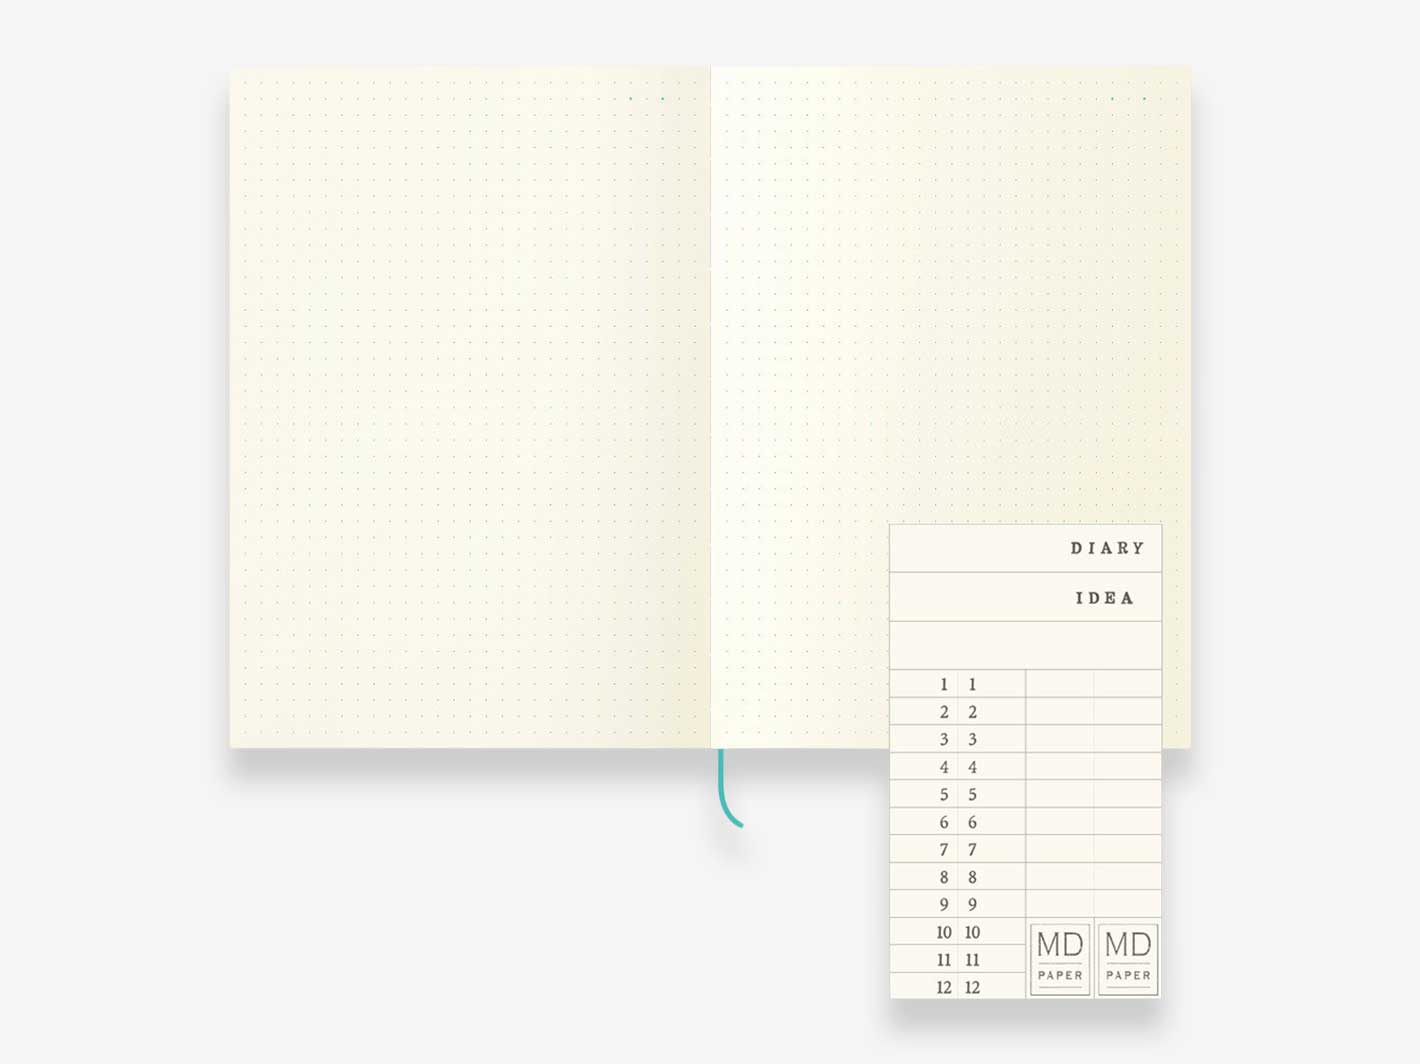 MD Notebook Journal A5 Dot Grid